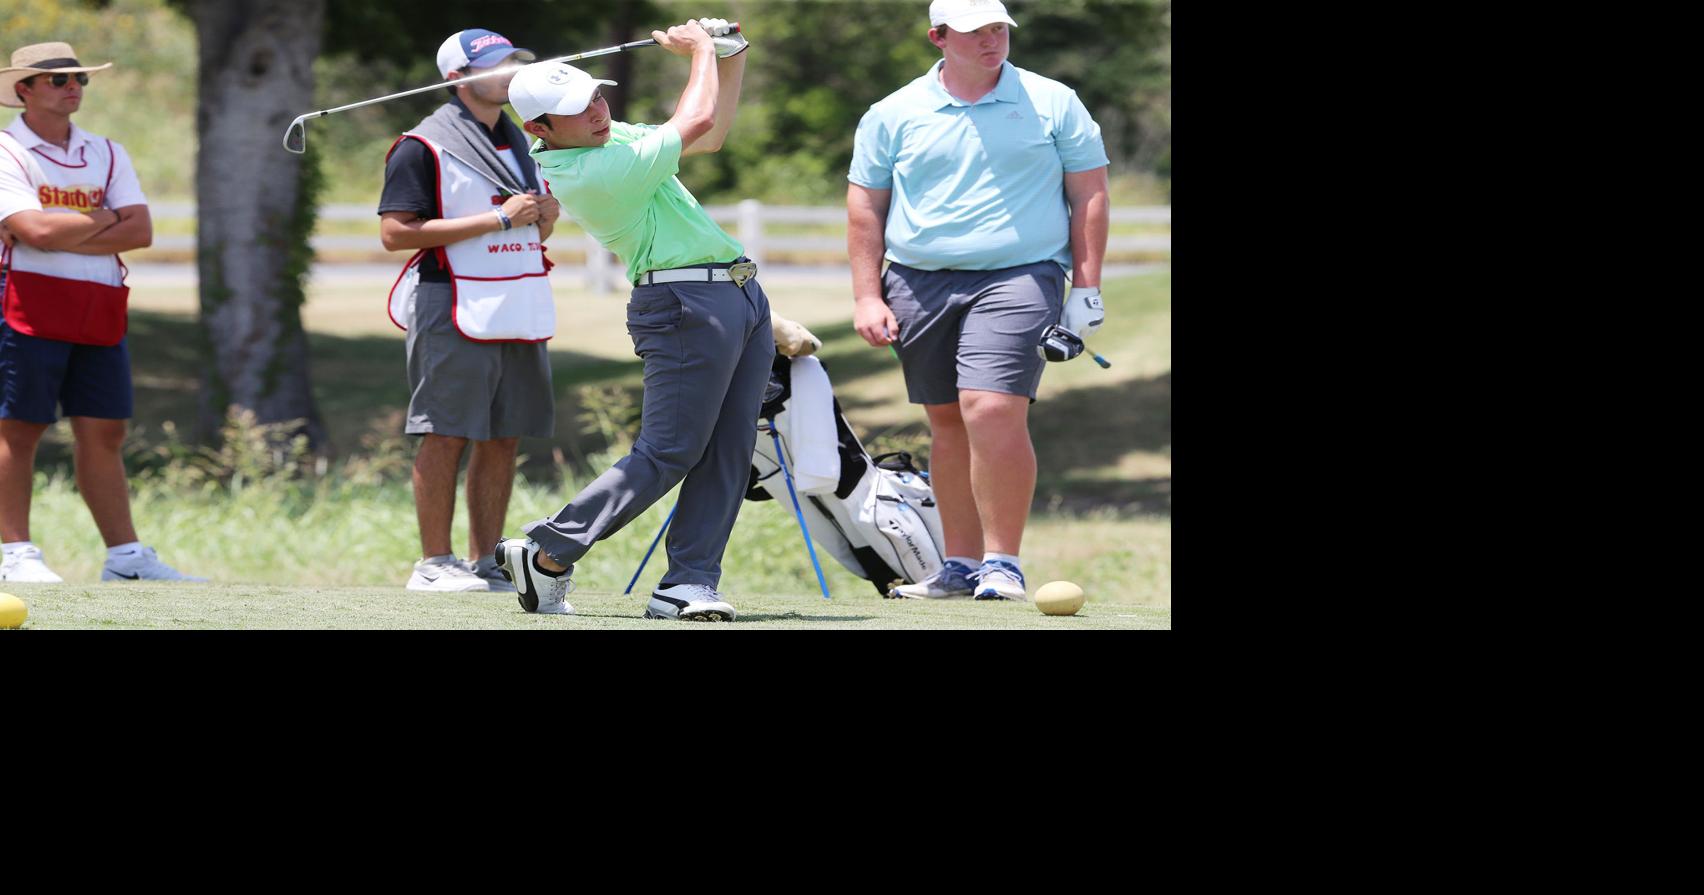 15yearold Garza wins Starburst golf tournament in playoff